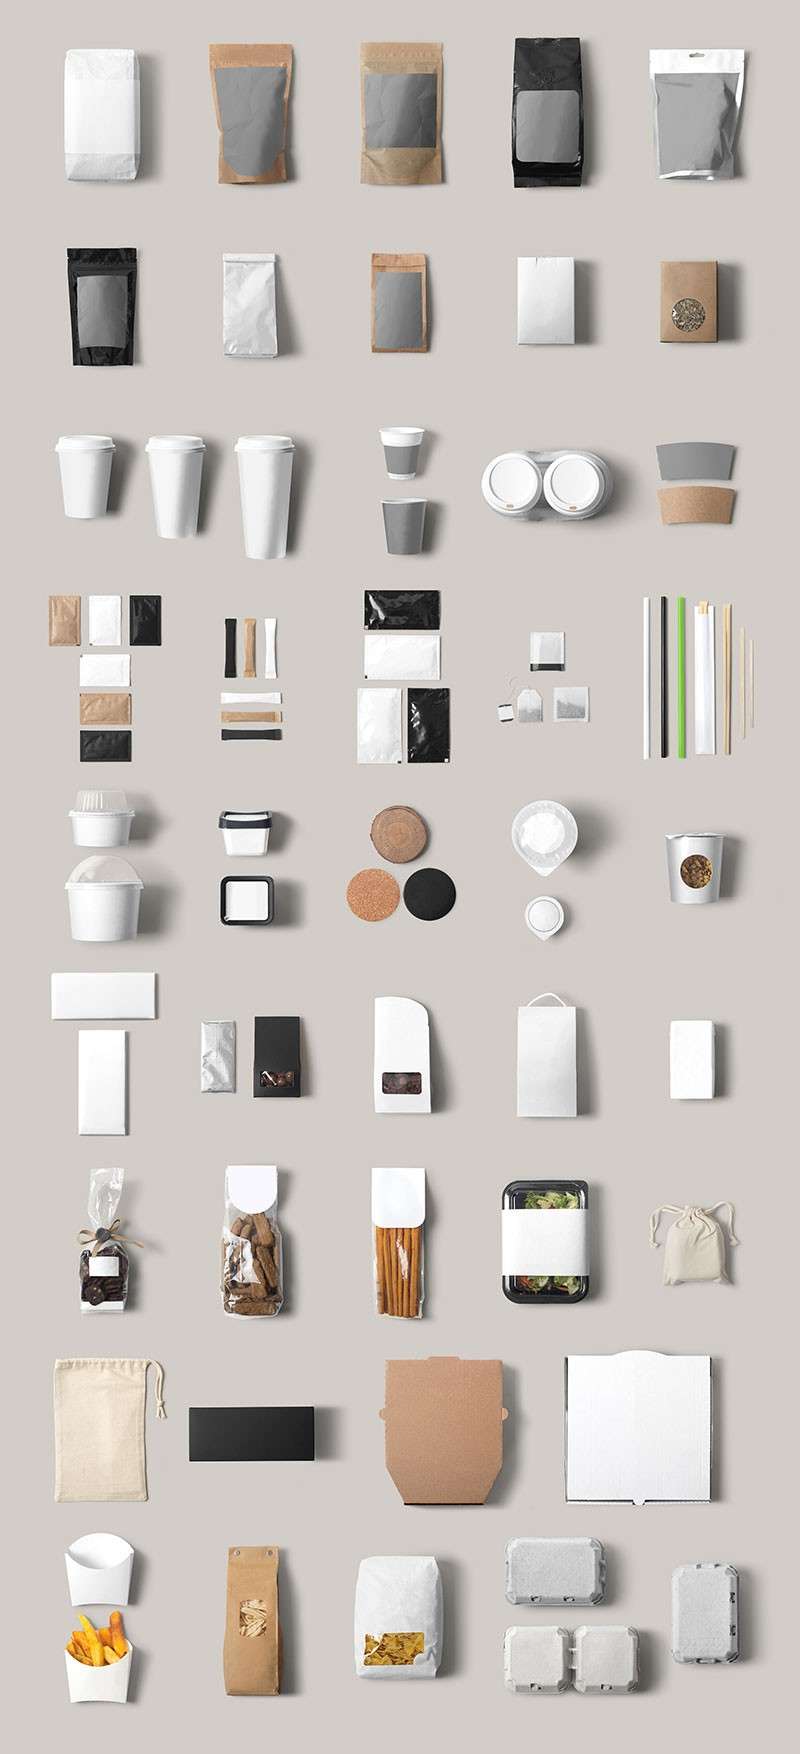 咖啡奶茶店品牌设计展示样机PSD模板 样机素材 第4张